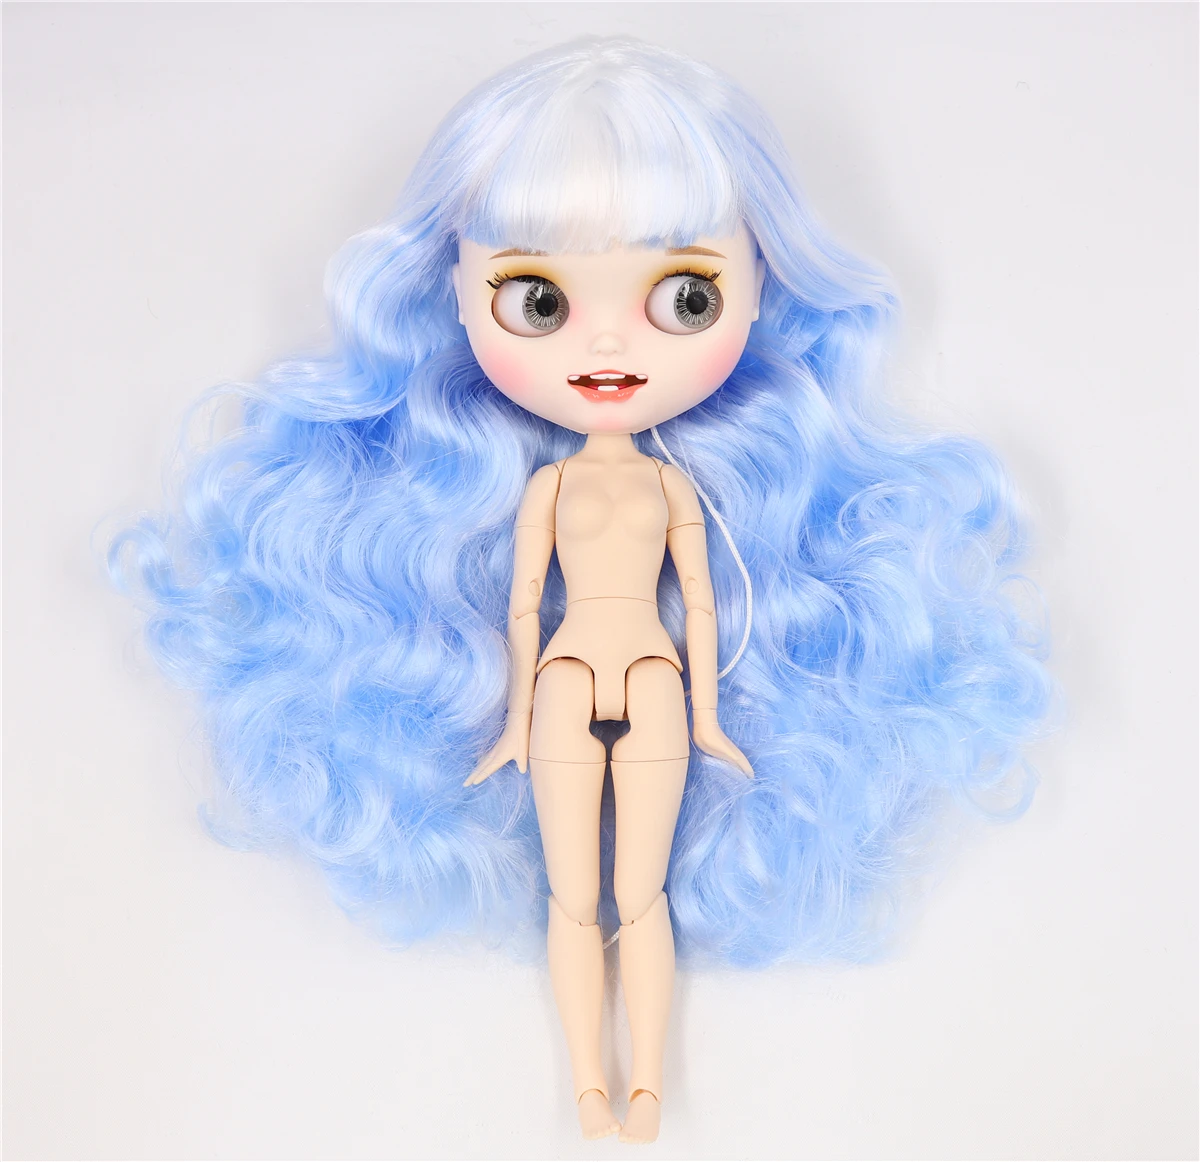 Ледяная фабрика blyth кукла белая кожа шарнир тела пользовательская кукла bjd игрушка матовое лицо с зубами голая кукла 30 см